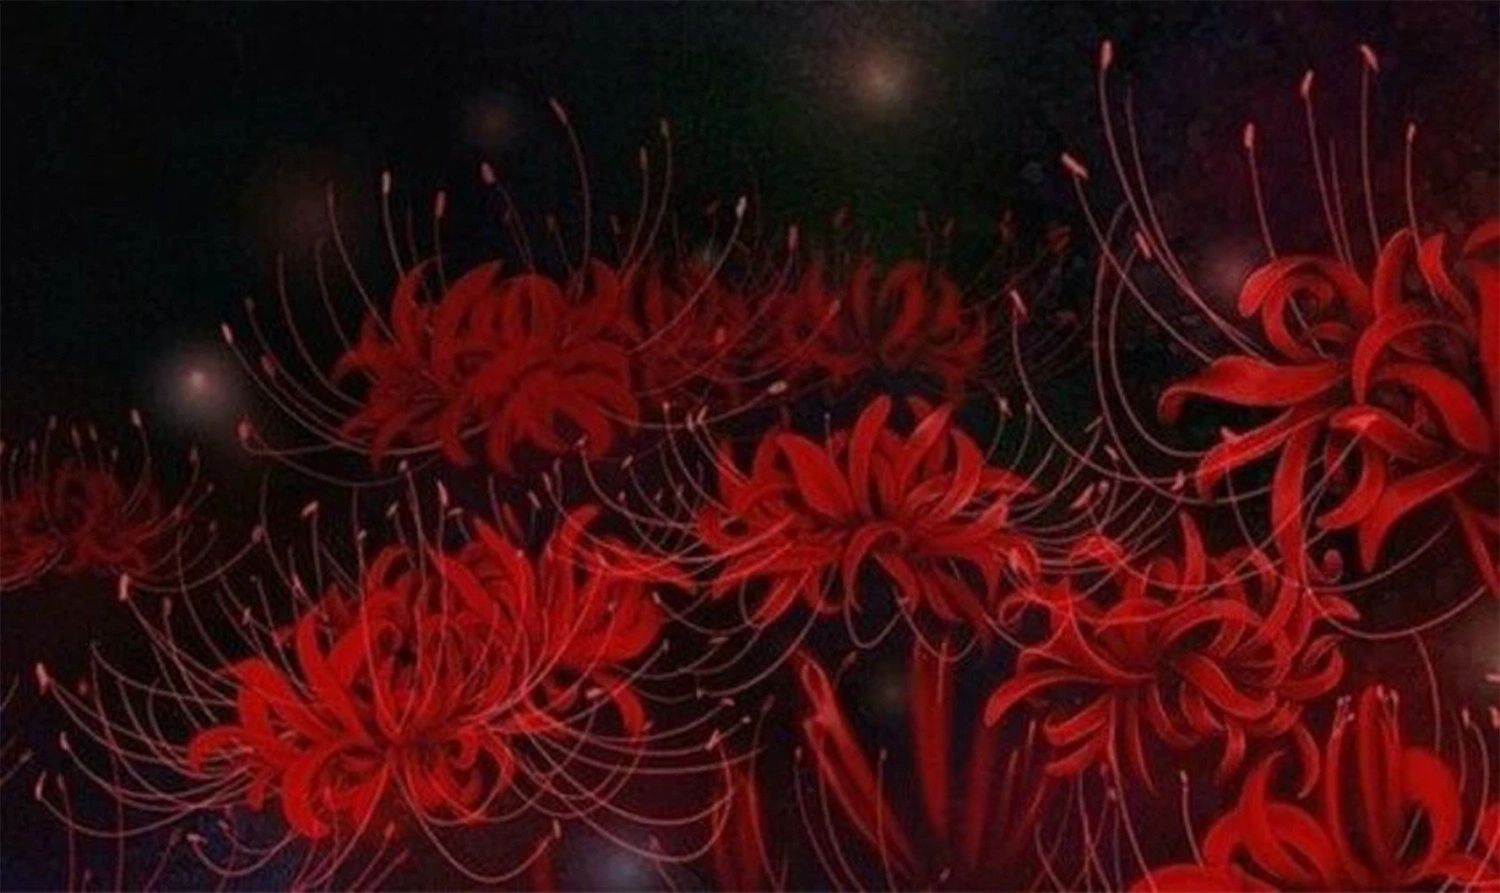  Wallpaper rừng hoa bỉ ngạn đỏ lòe nền tối quái mị cho tới máy tính